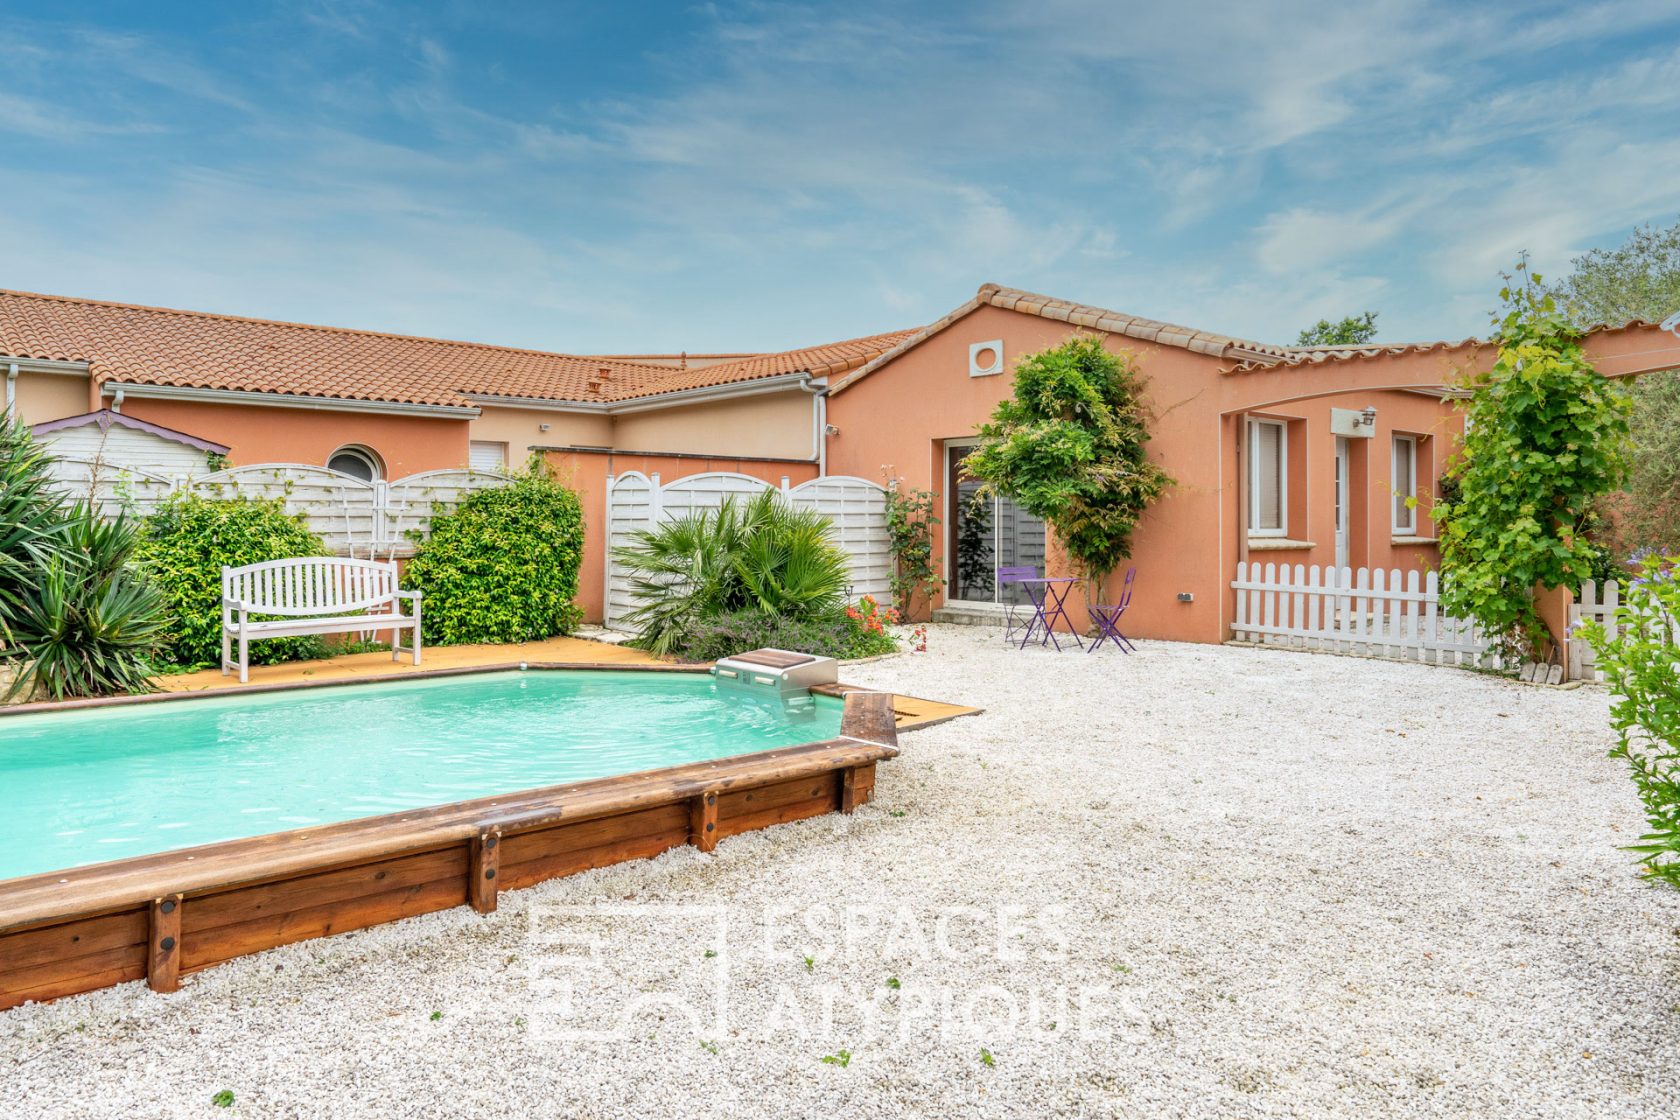 Maison aux couleurs de la Toscane avec sa piscine chauffée